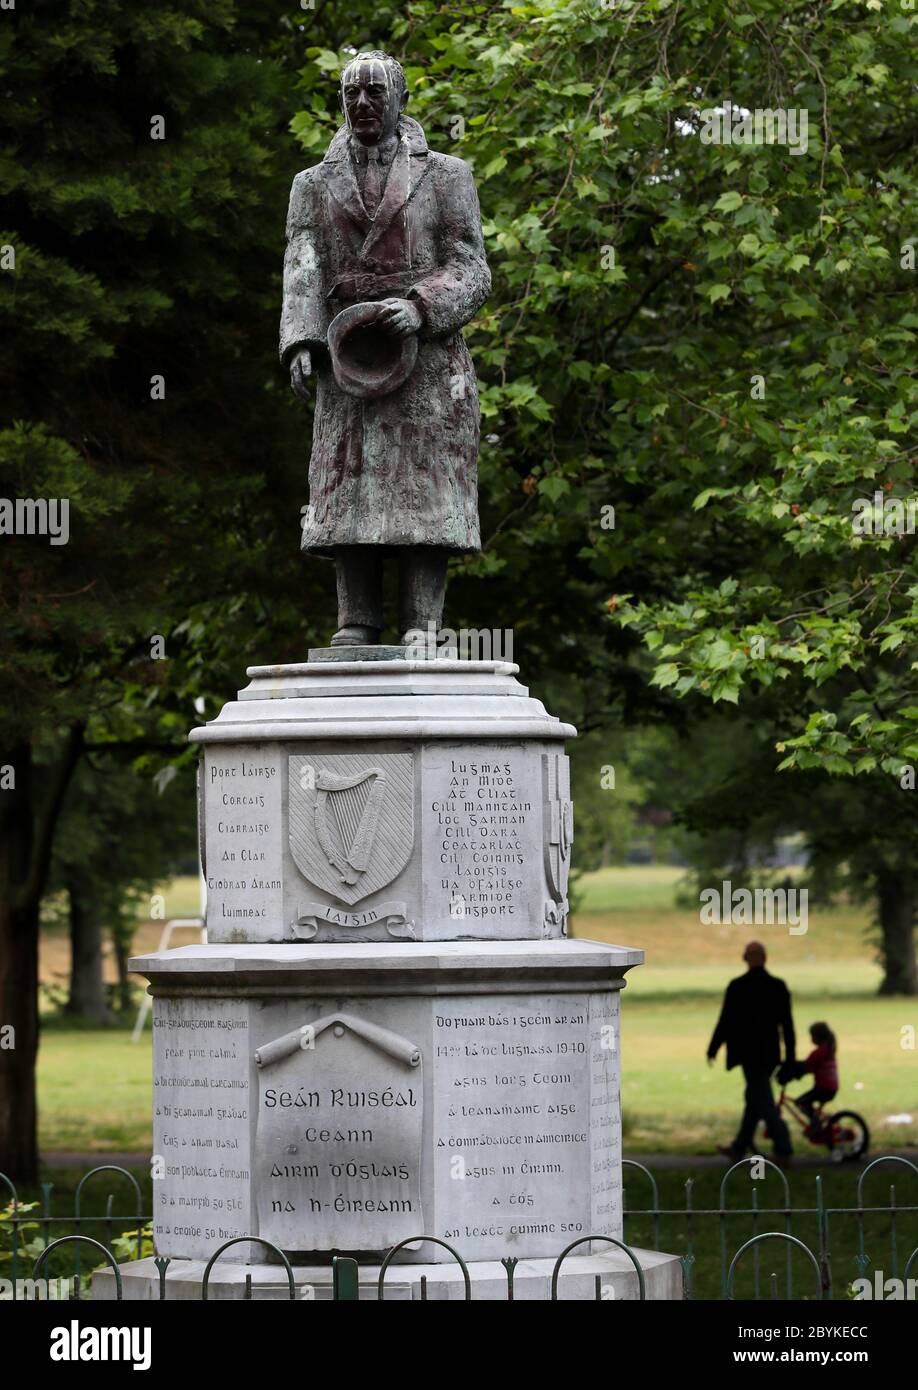 Eine Statue von Sean Russell, einem irischen Republikaner, der im Aufstand von 1916 kämpfte und während des Unabhängigkeitskrieges ein Führer war, den Taoiseach Leo Varadkar möglicherweise entfernen muss. Stockfoto